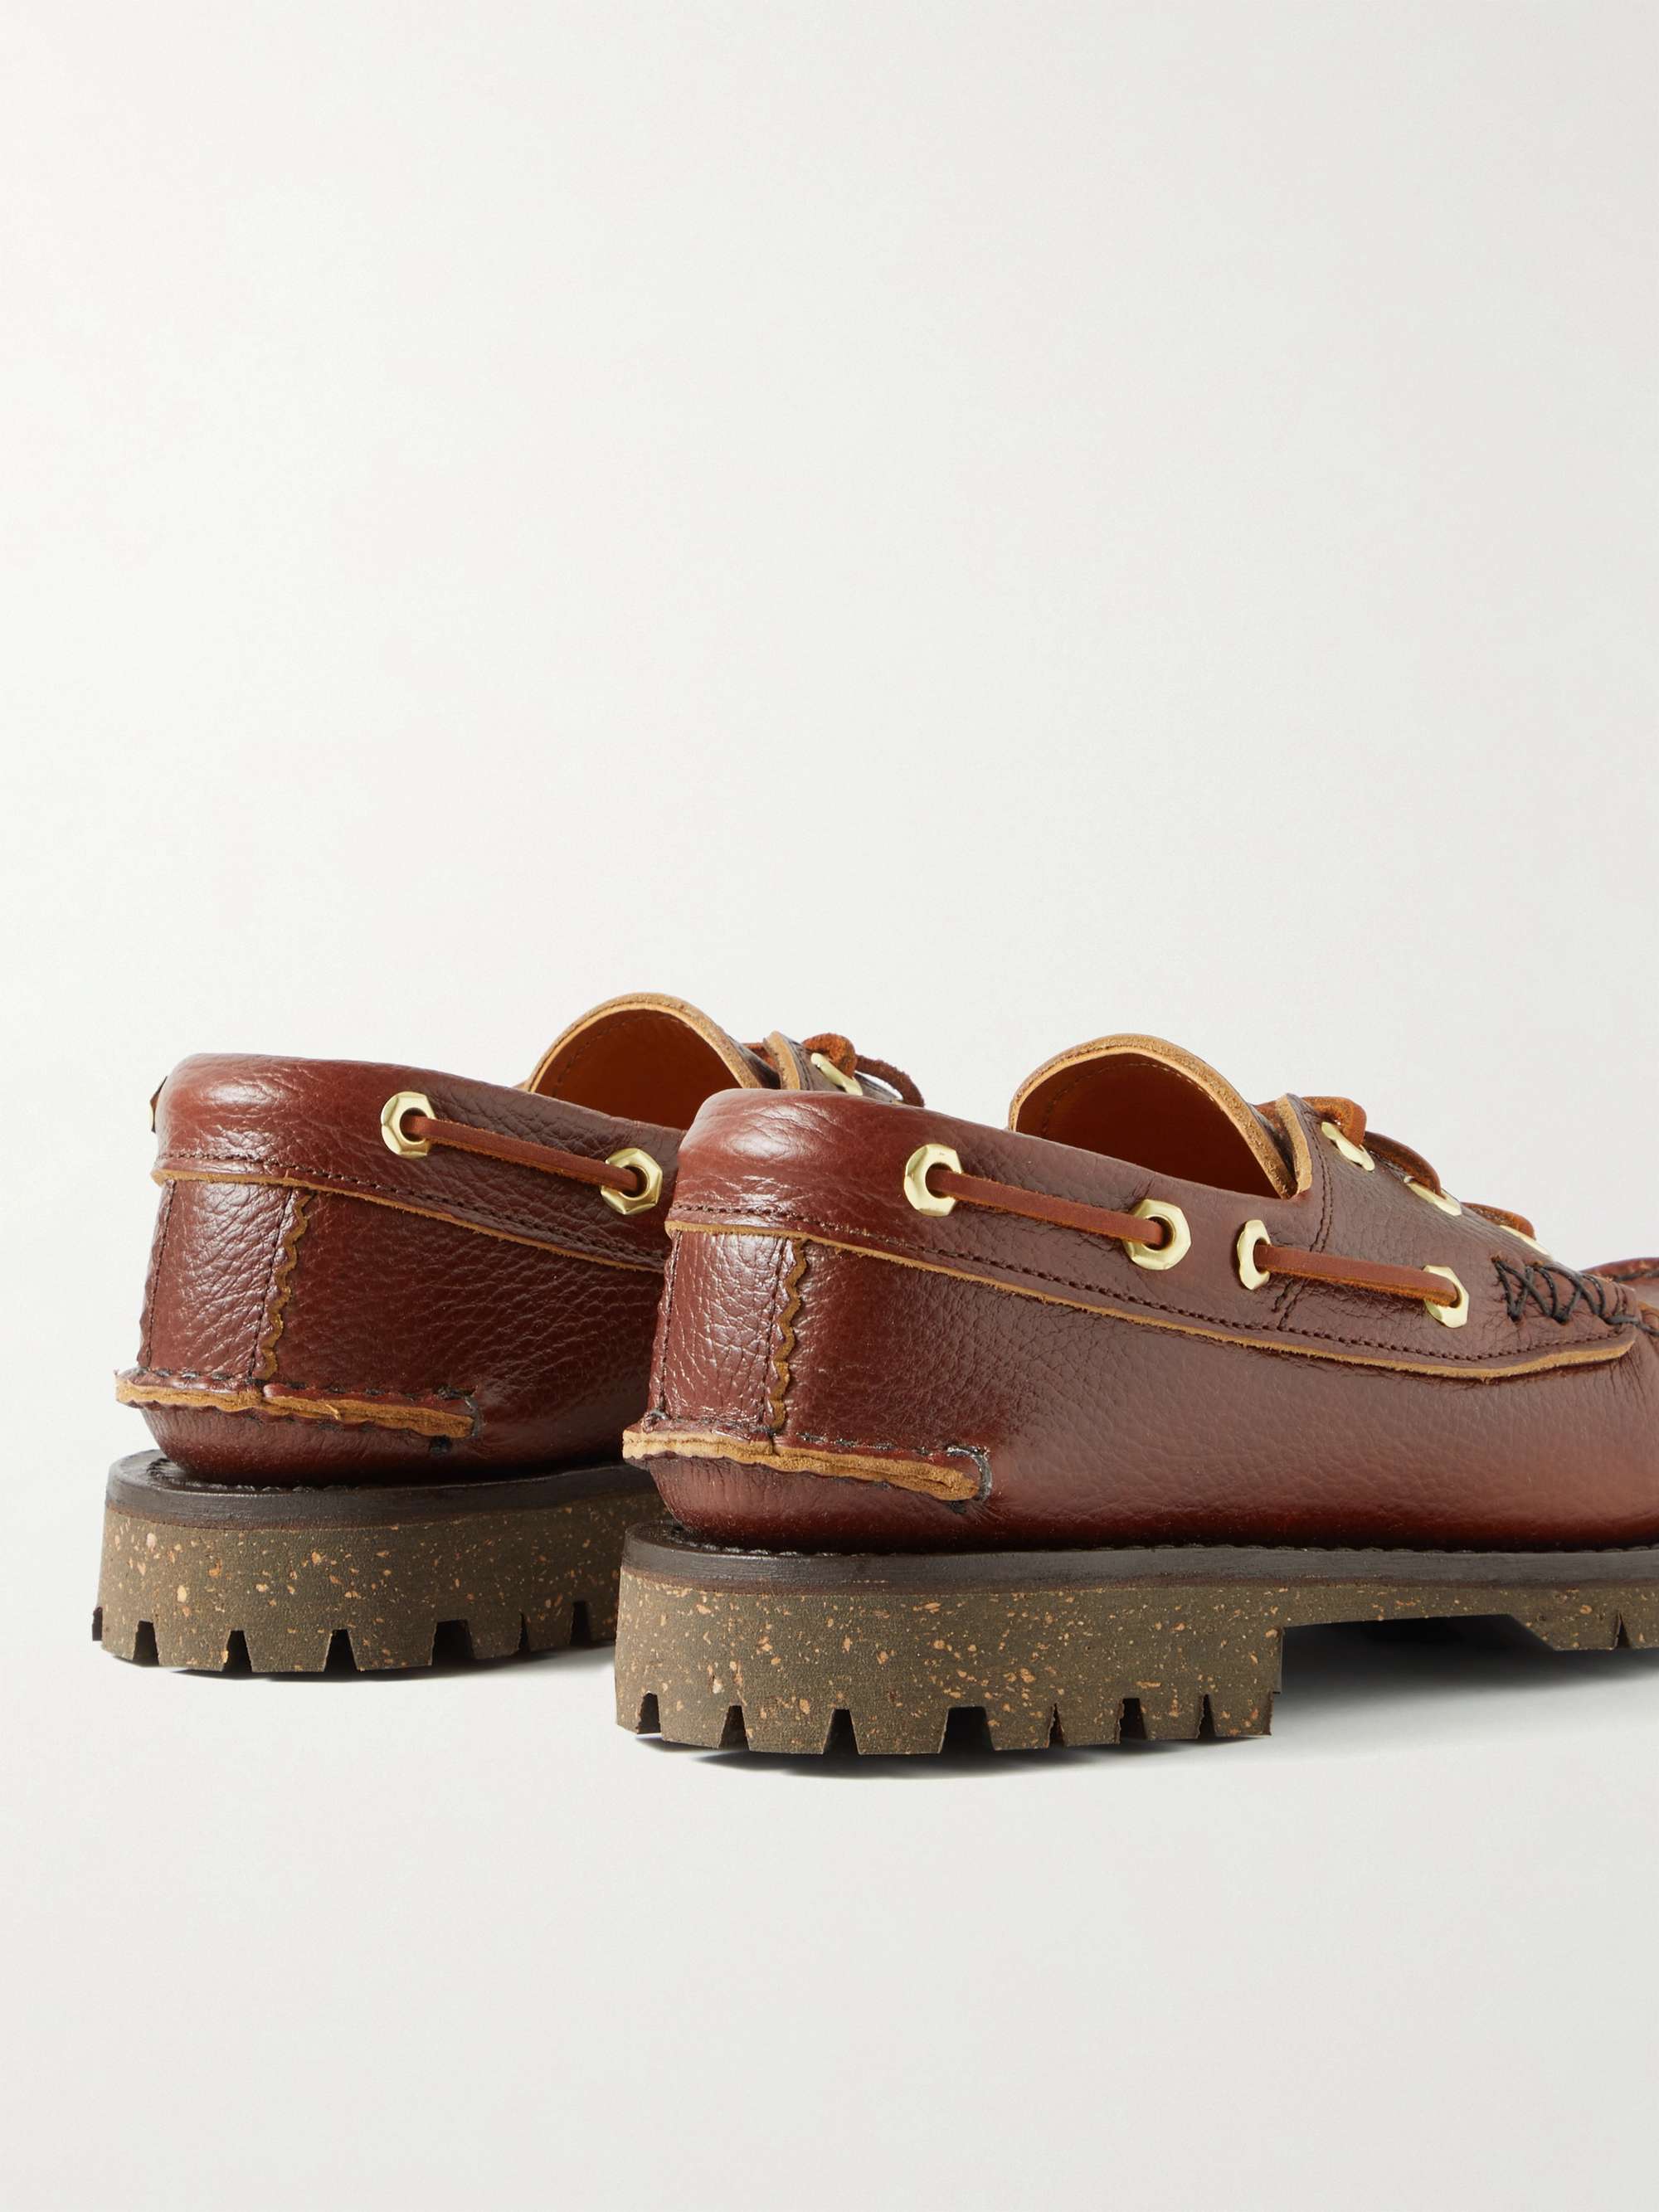 YUKETEN Full-Grain Leather Boat Shoes